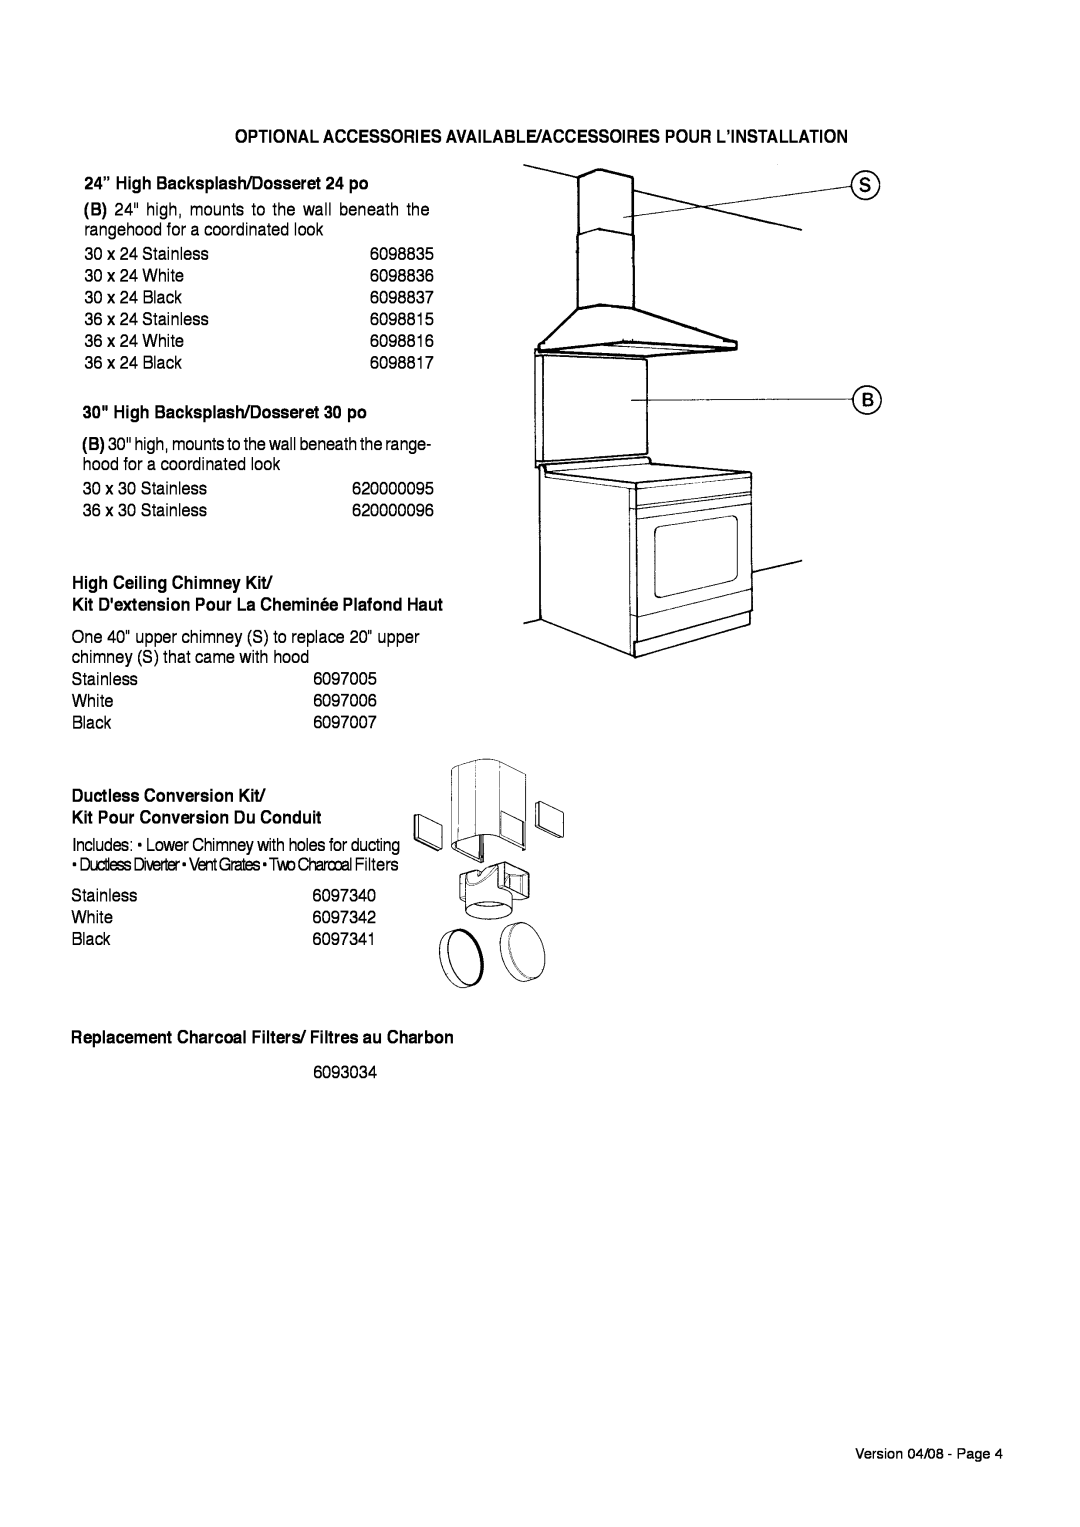 Faber 36 24” High Backsplash/Dosseret 24 po, High Backsplash/Dosseret 30 po, High Ceiling Chimney Kit 